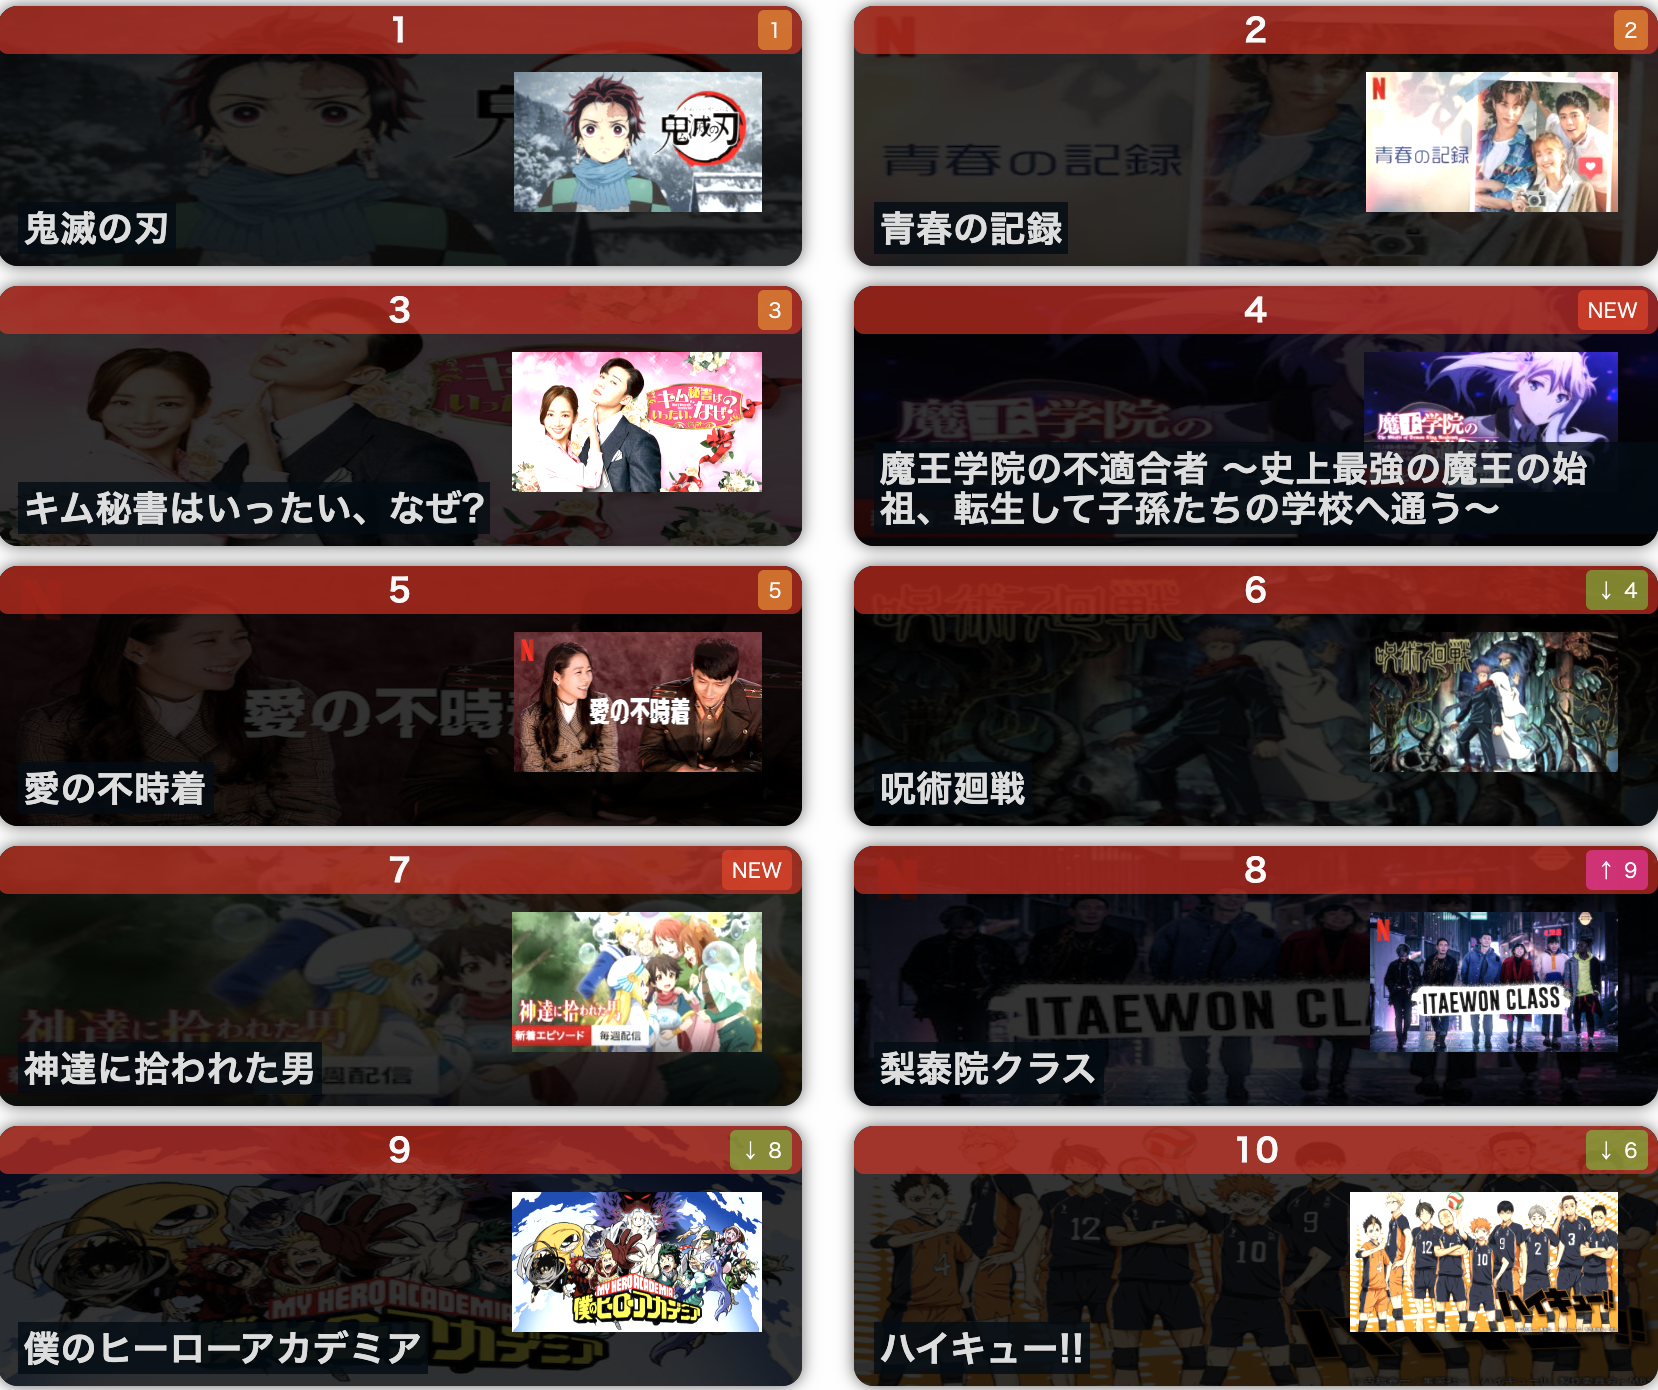 10월 25일 기준 일본 넷플릭스 순위 - 출처 : netflix.com/jp